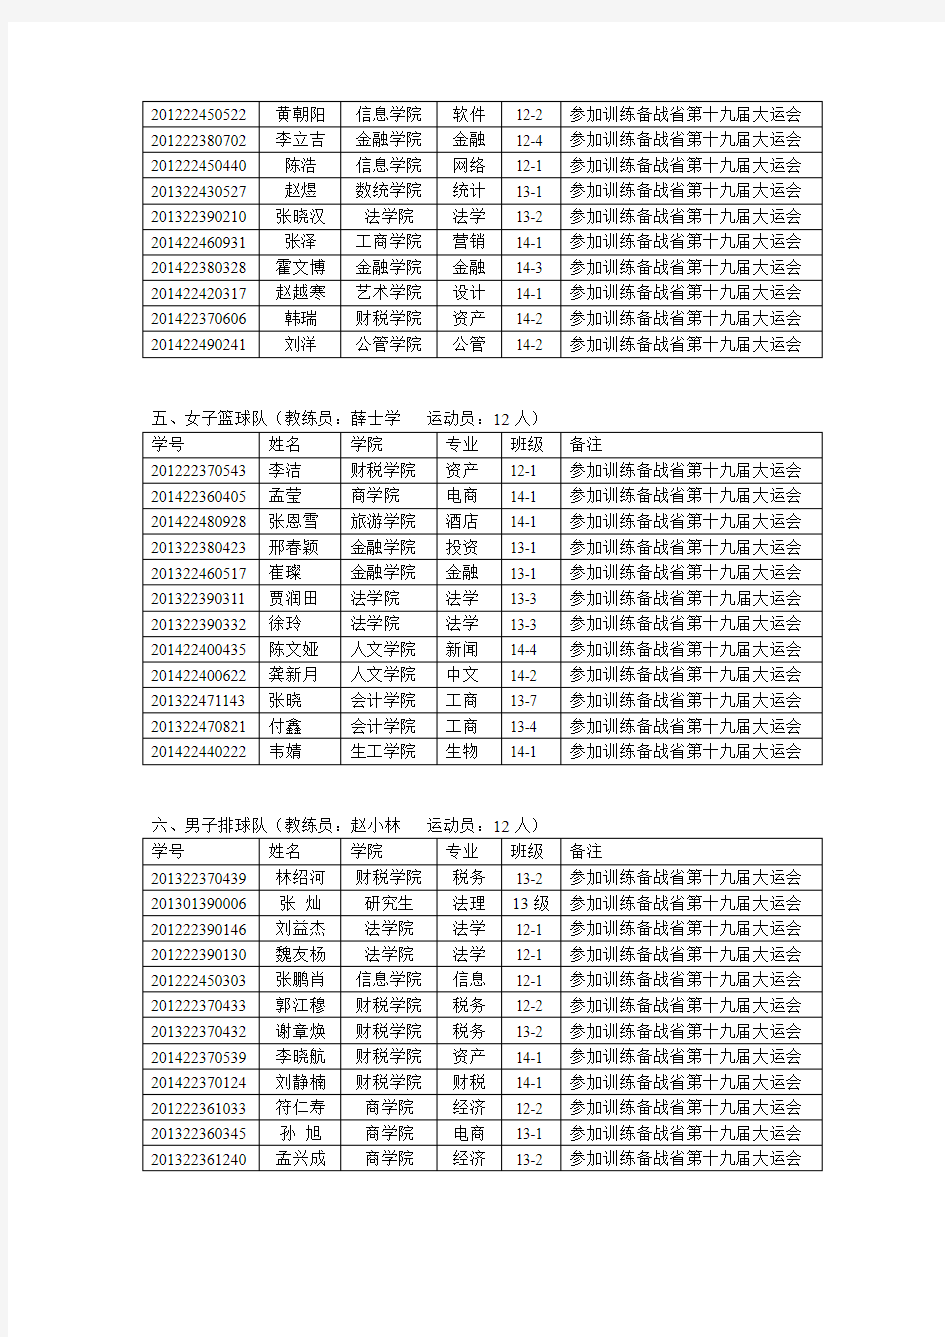 河北经贸大学运动队名单及比赛成绩201420152